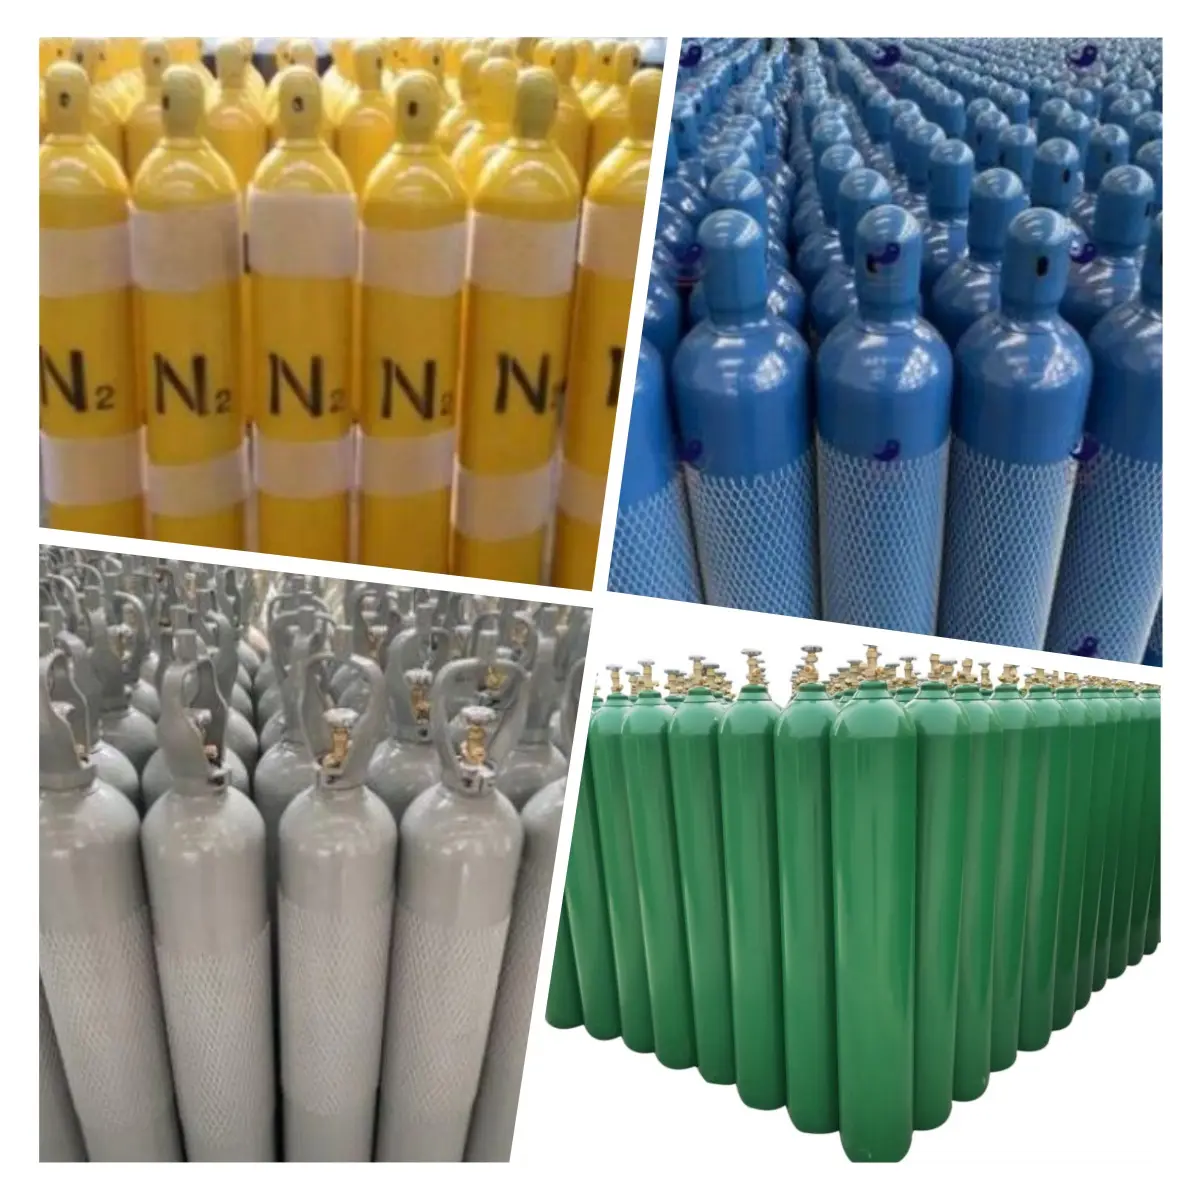 Hete Verkoop Xenon/ Argon/Zuurstof/N2/Co2/Hij Gas Cilinder Professionele Zuurstofgasfles Medische